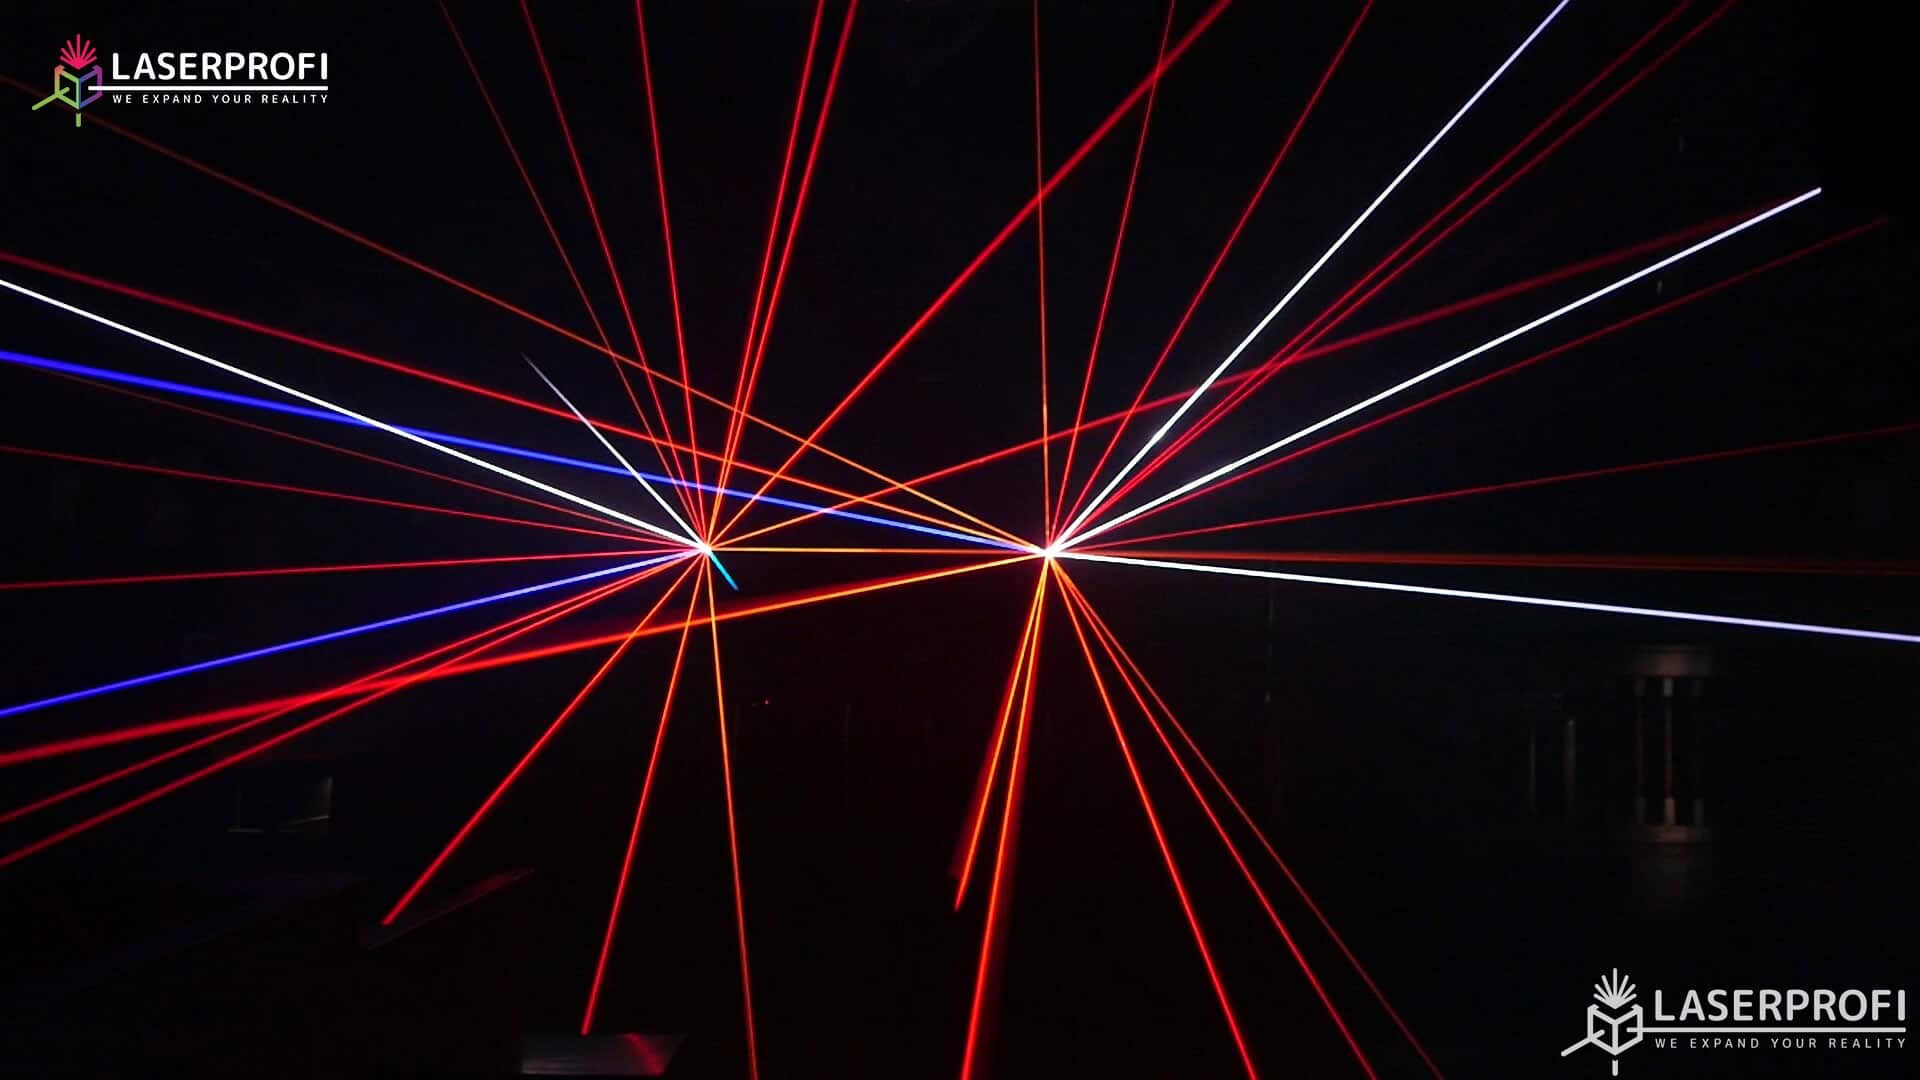 Przestrzenny pokaz laserowy czerwone wiązki laserowe